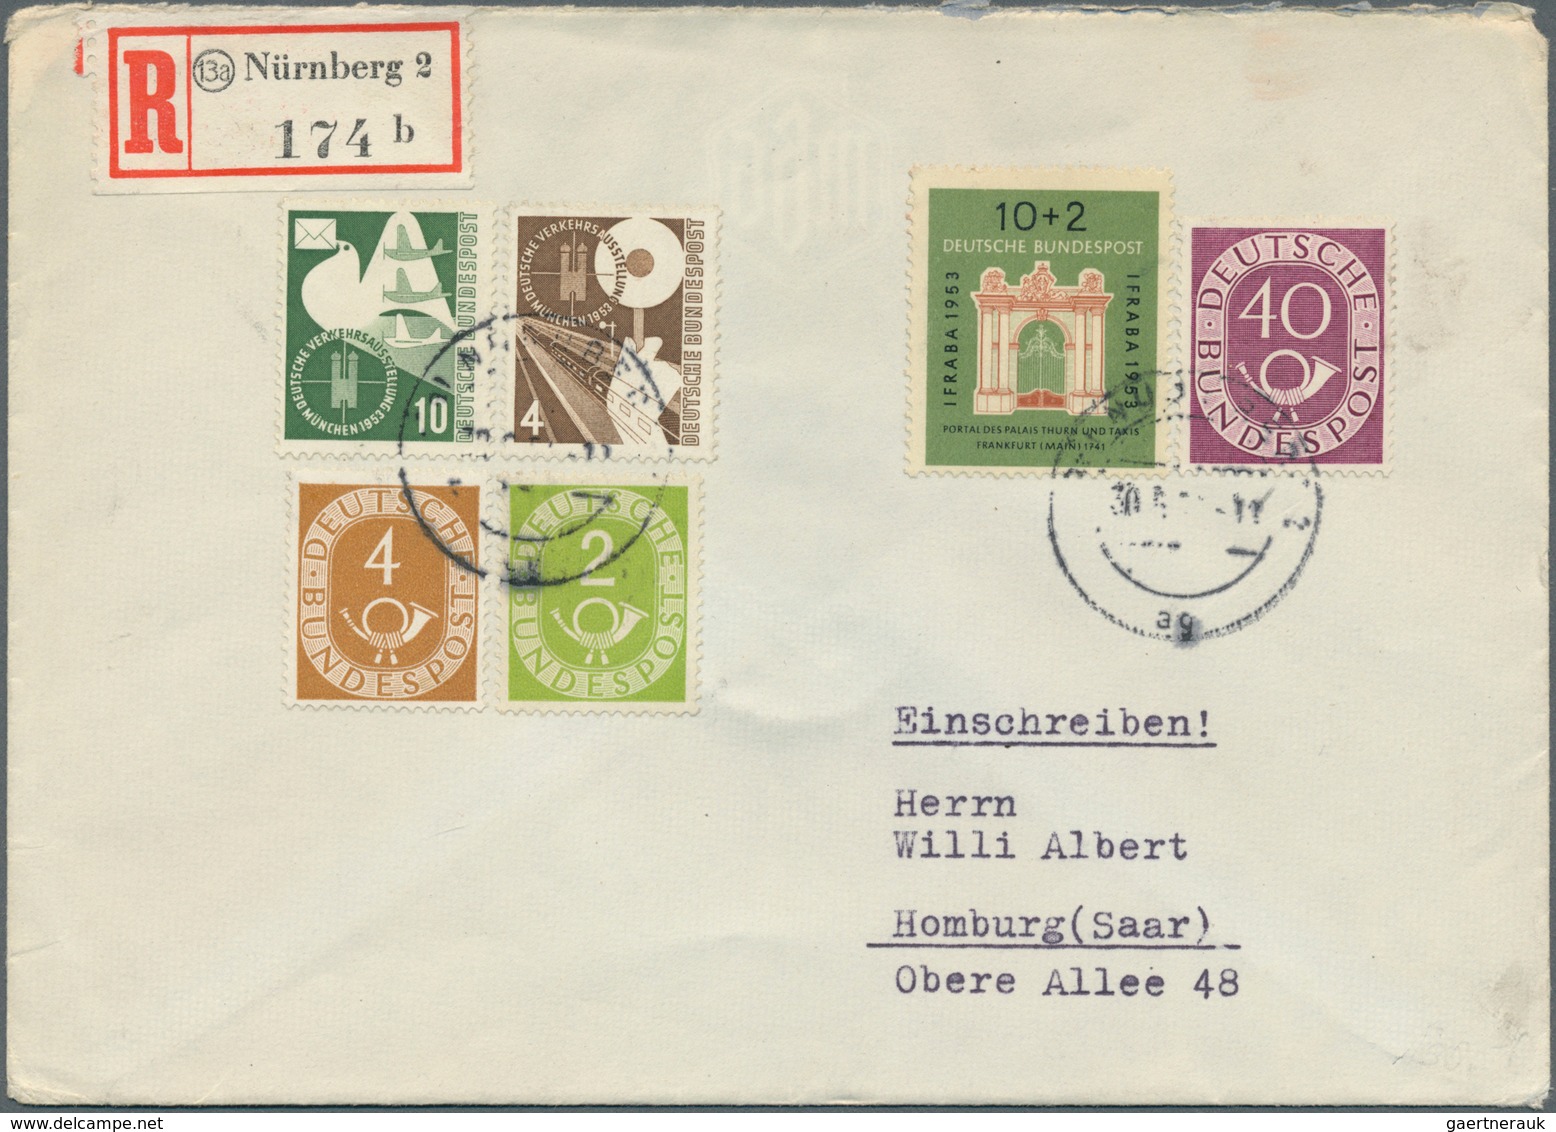 32422 Bundesrepublik und Berlin: 1949/1968, meist bis 1959, Partie von 51 Briefen und Karten, dabei dekora